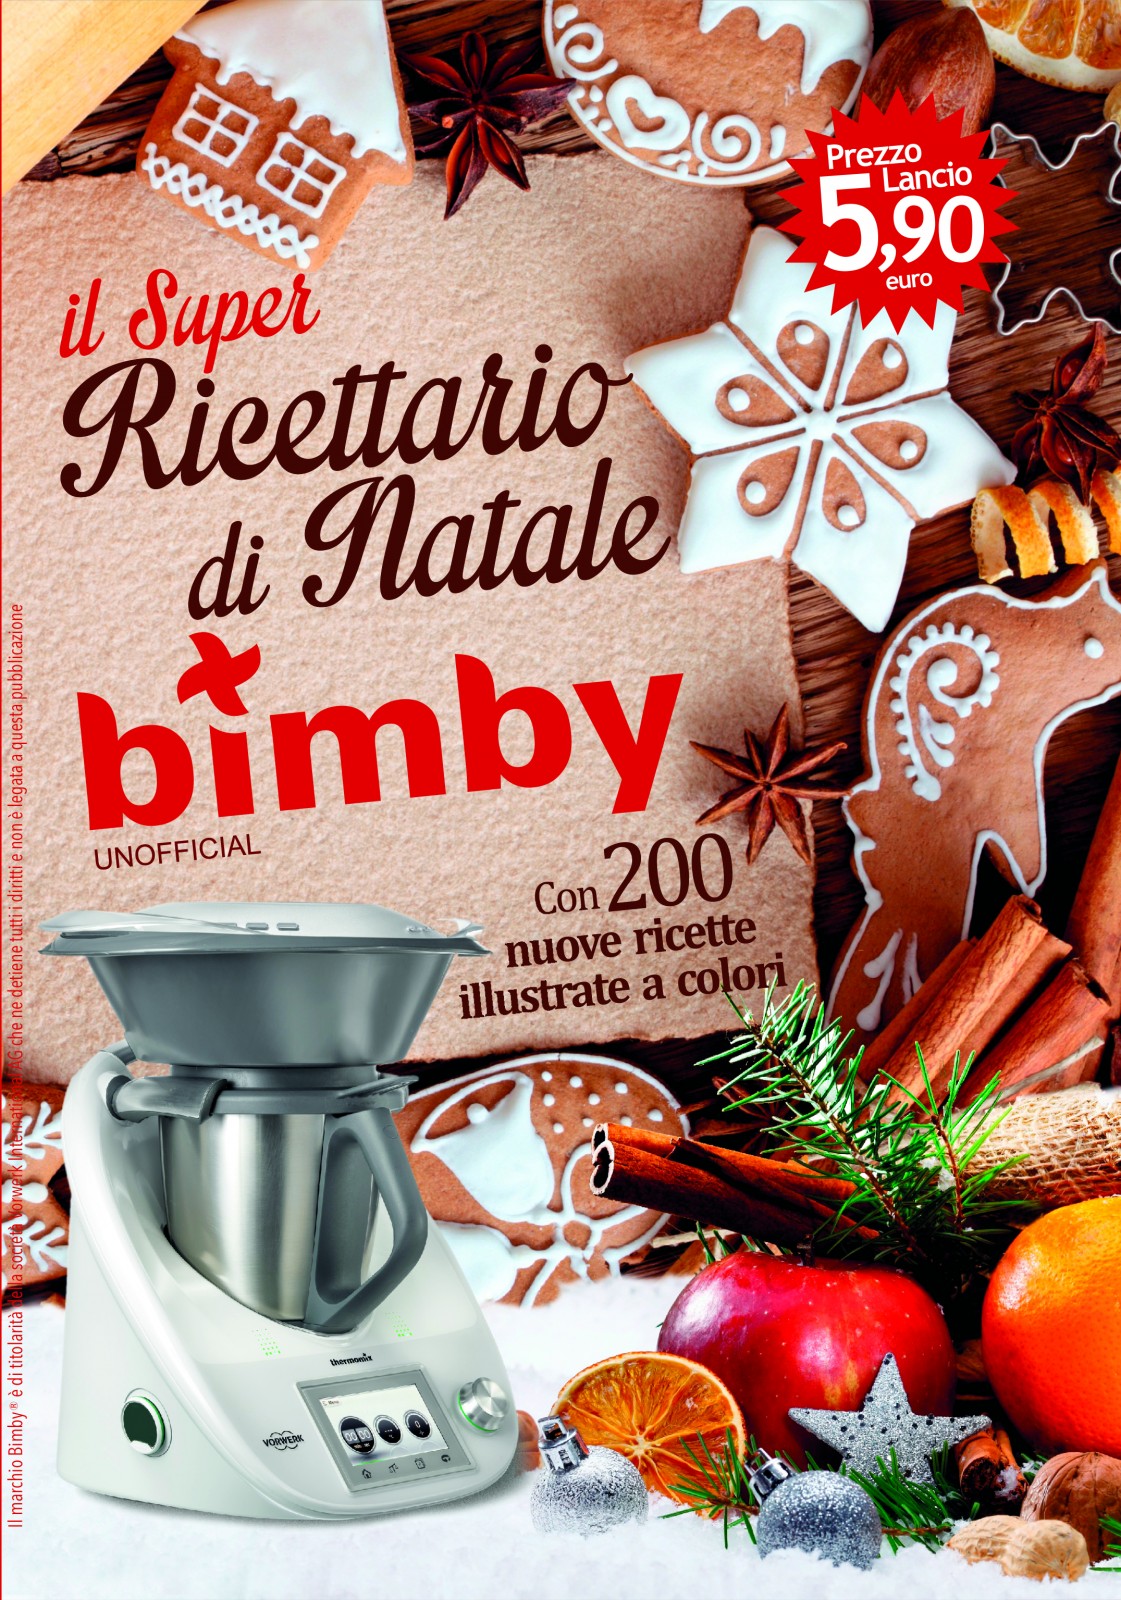 Ricettario Bimby: Libro Ricette Bimby - Il Super Ricettario Bimby